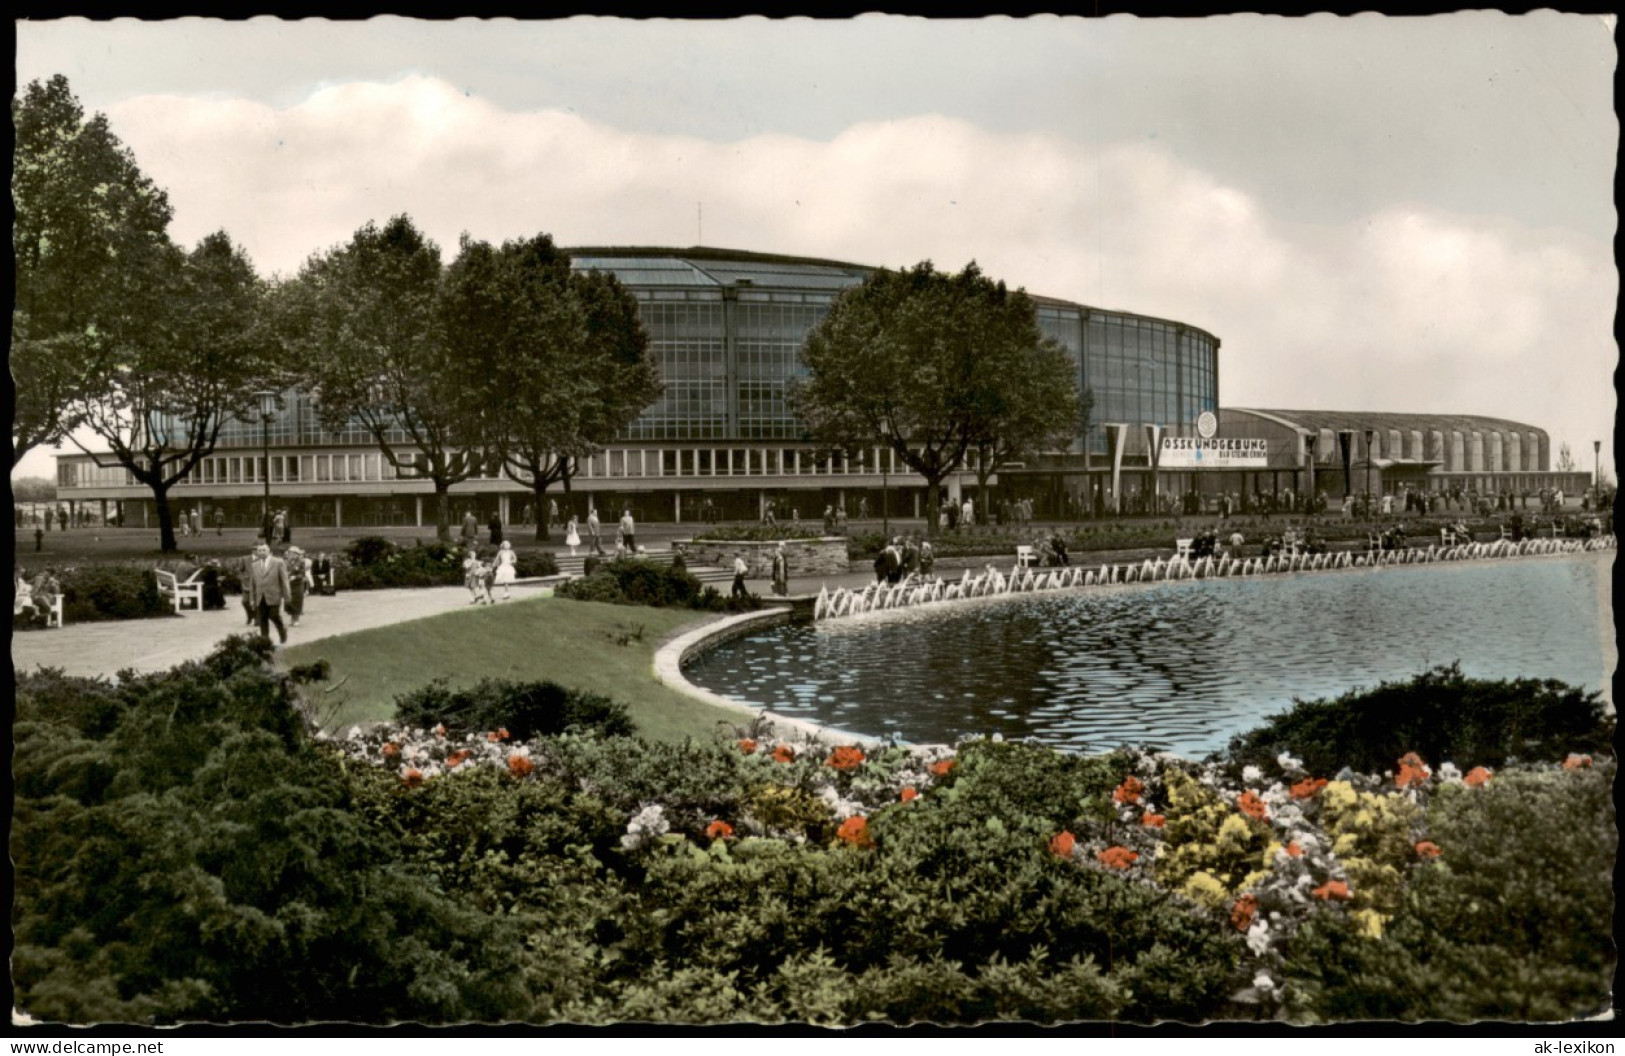 Dortmund Teichanlage An Der Westfalenhalle (Colorfotokarte) 1959 - Dortmund